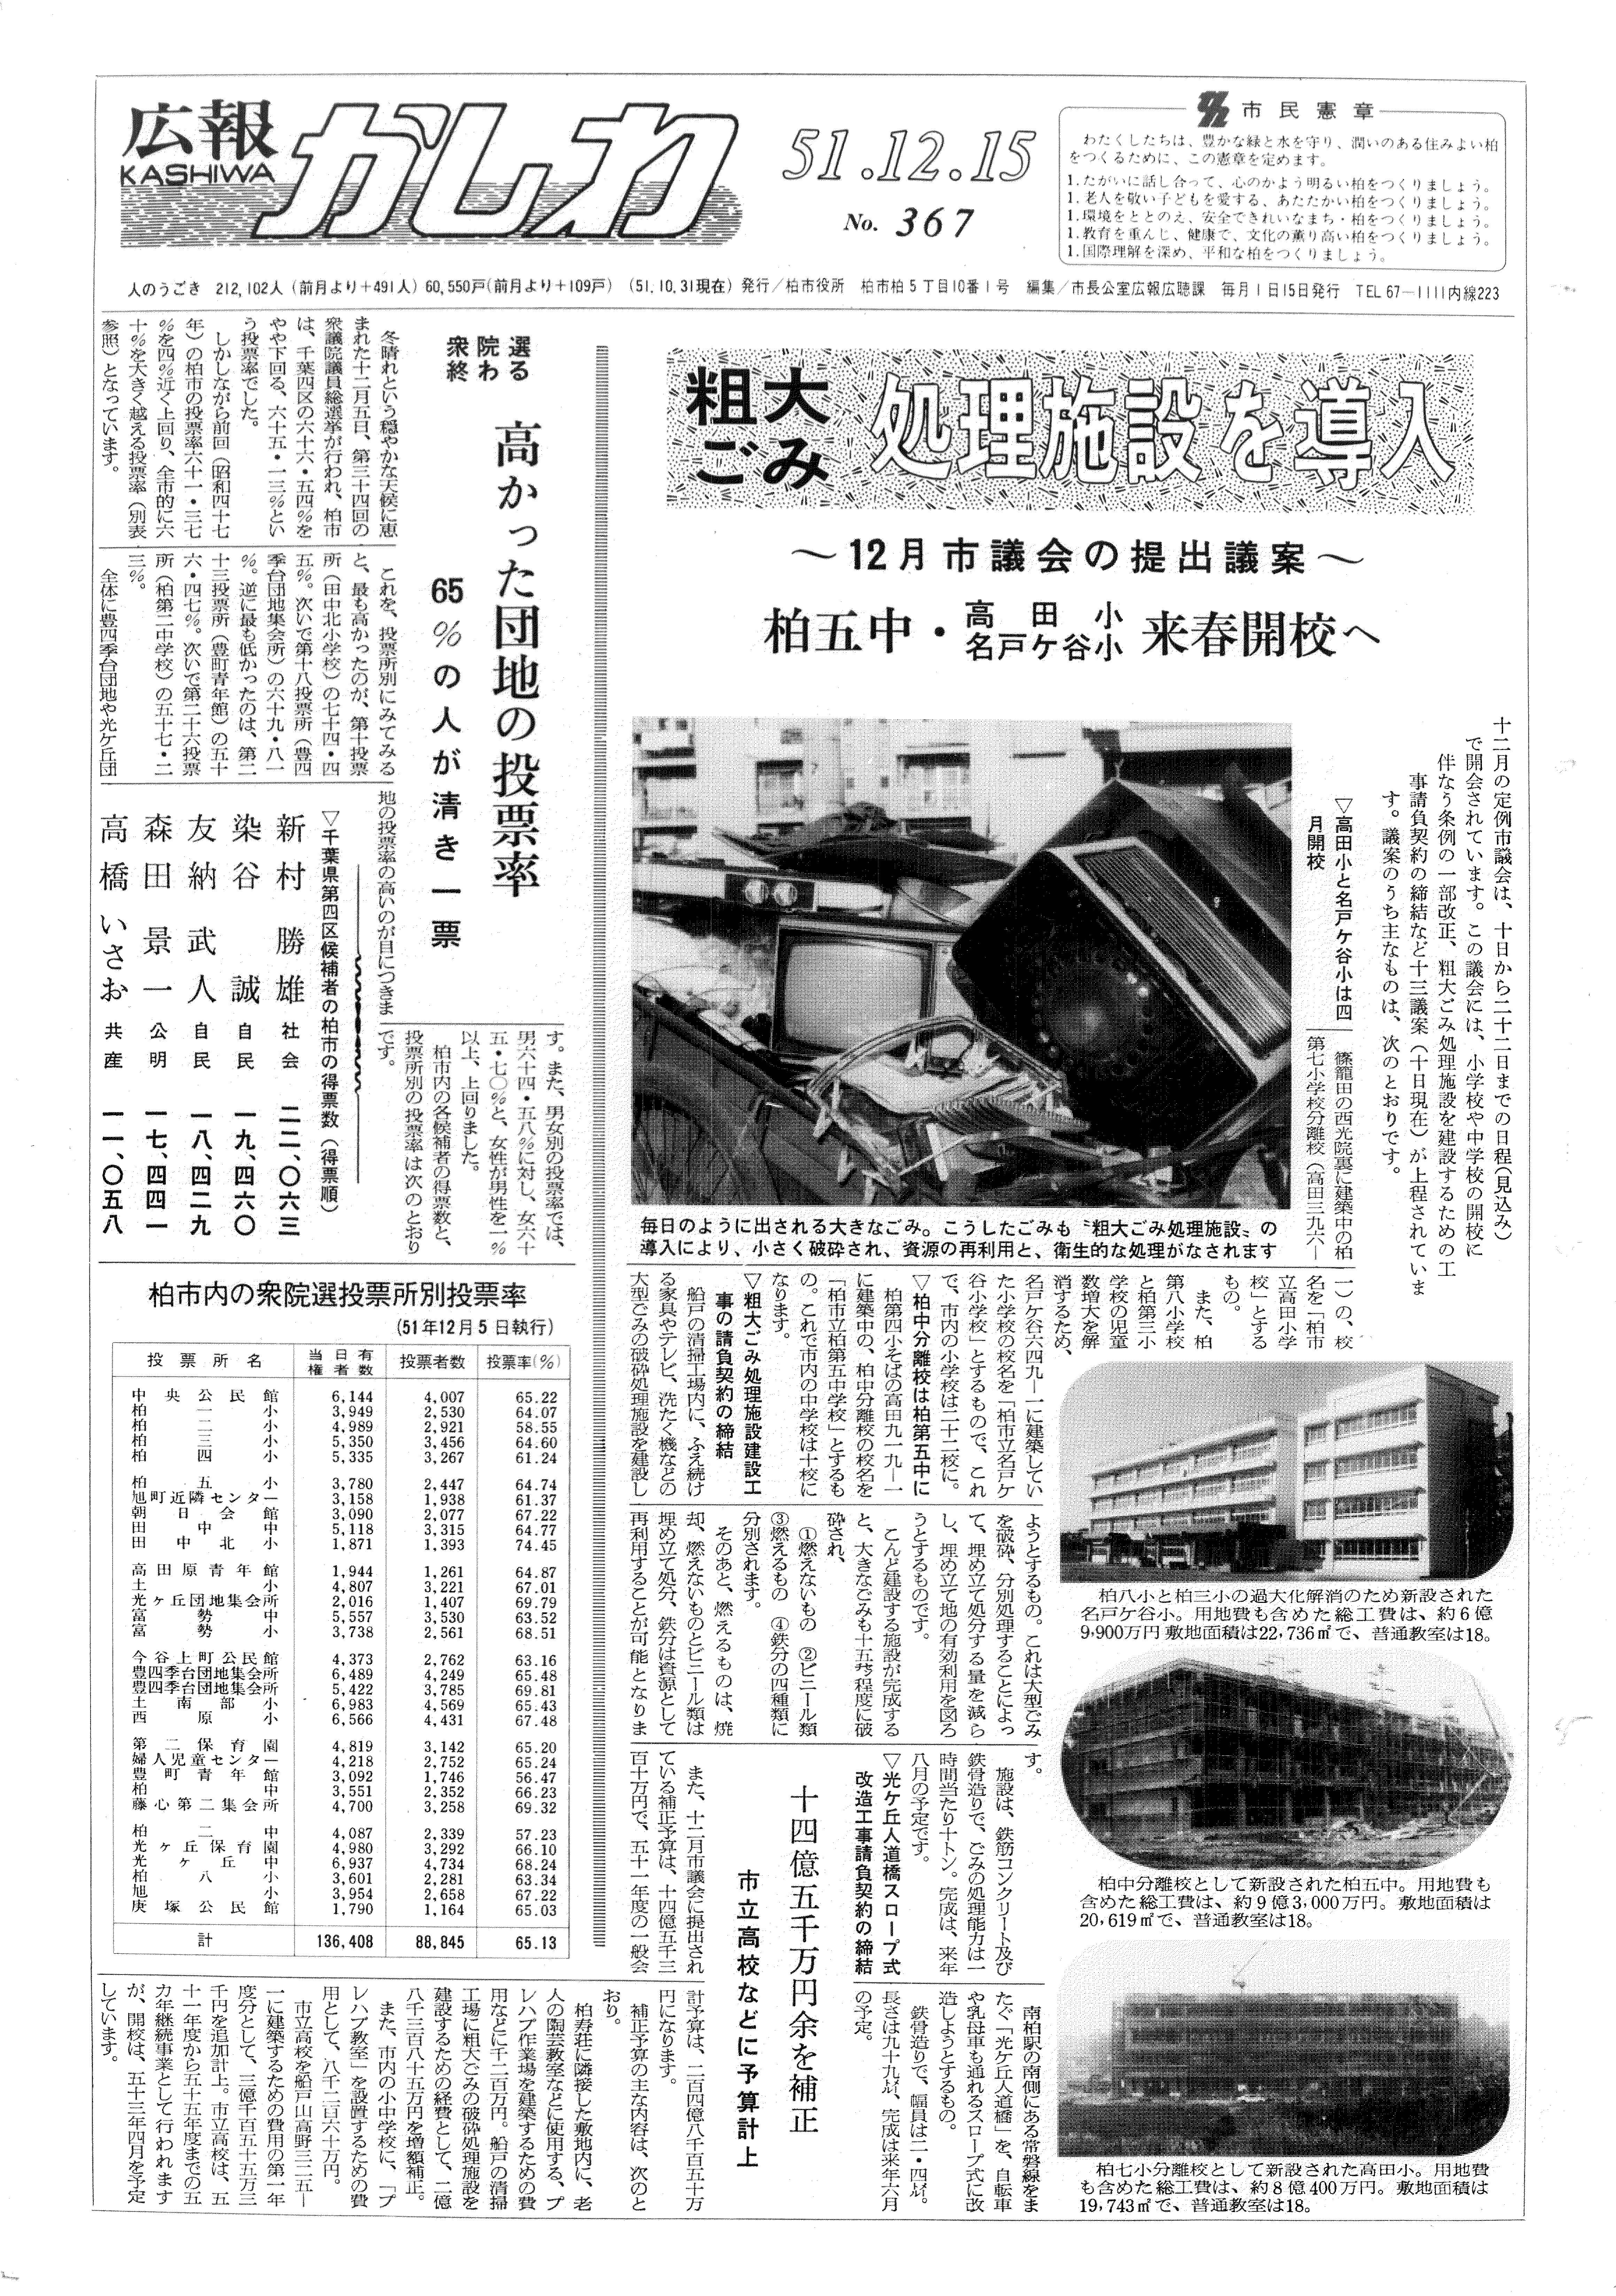 広報かしわ　昭和51年12月15日発行　367号